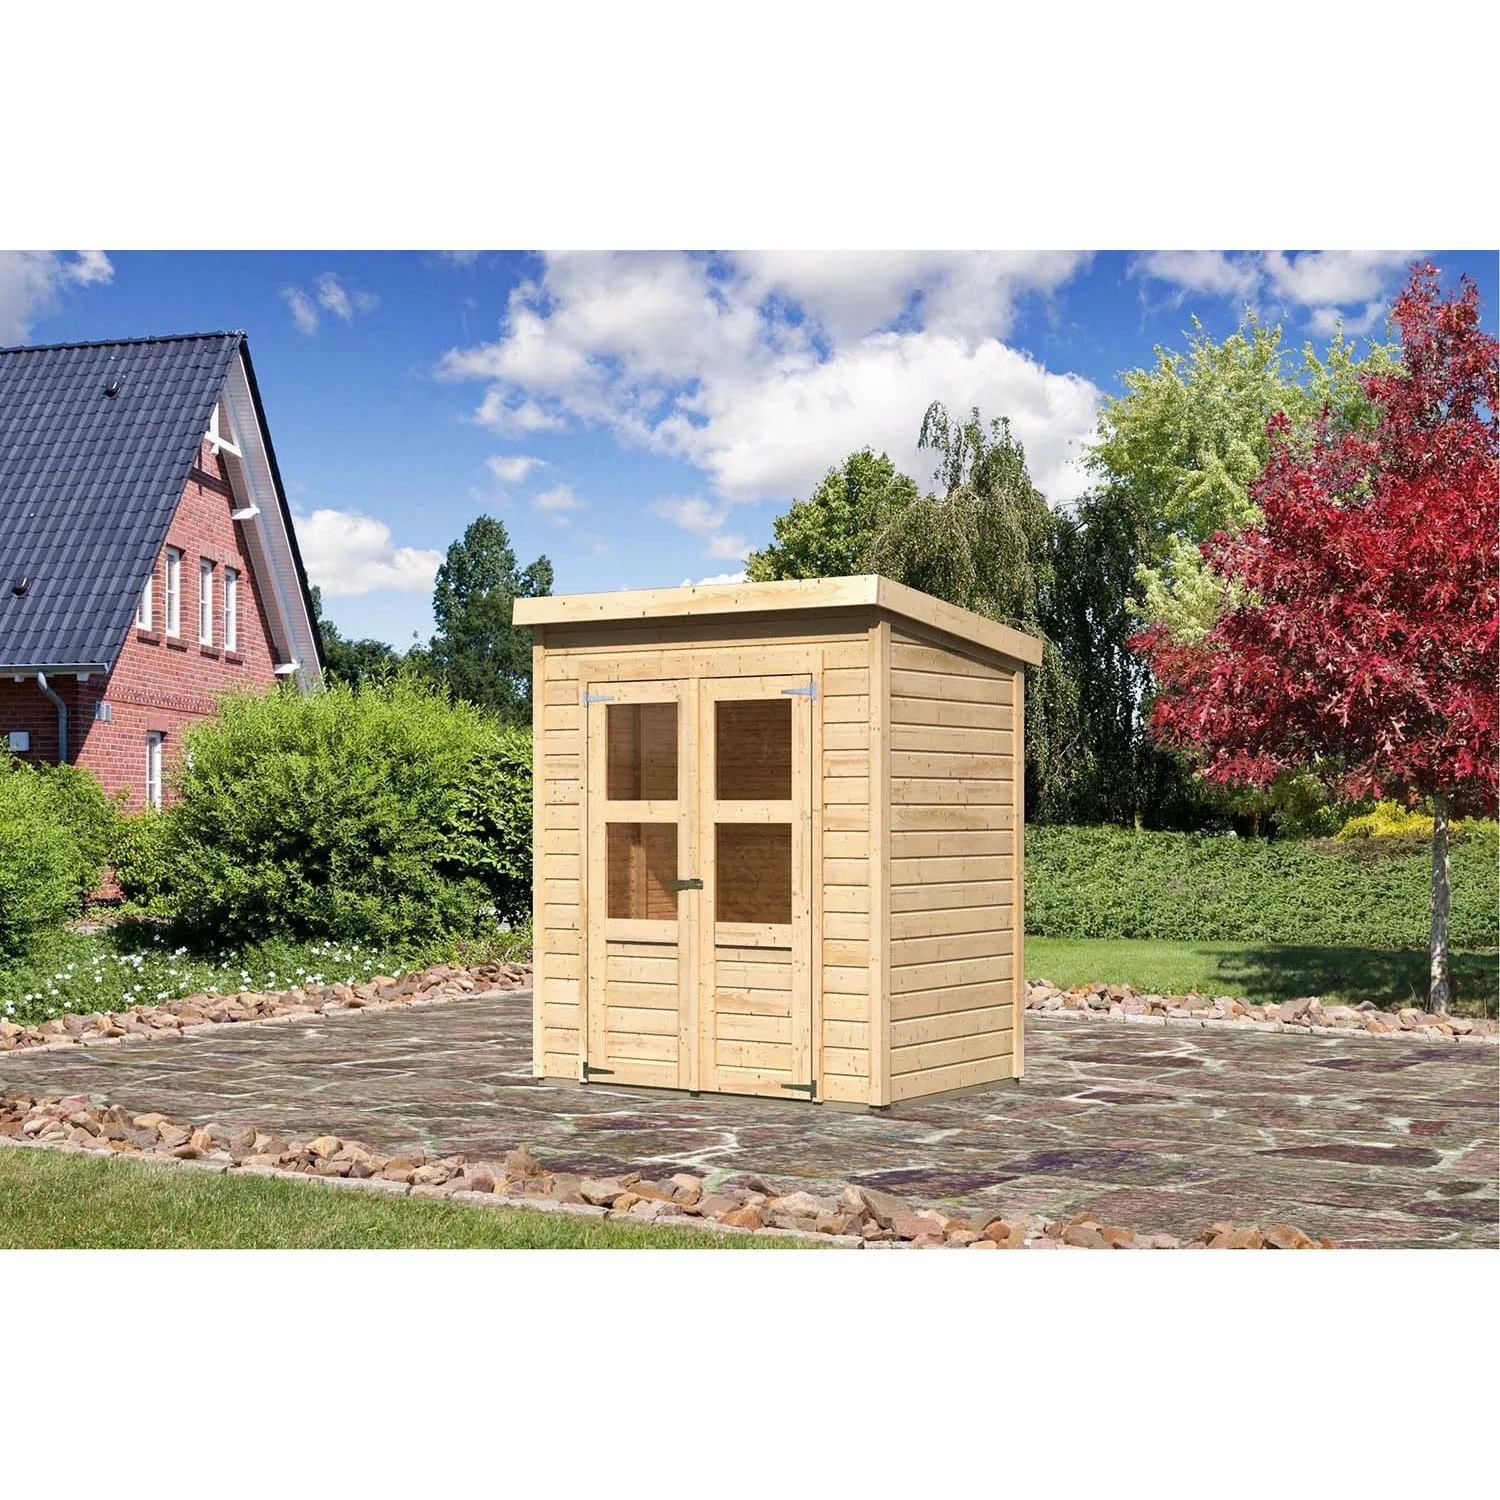 Karibu Holz-Gartenhaus Vellinge Natur Pultdach Unbehandelt 178 cm x 122 cm günstig online kaufen